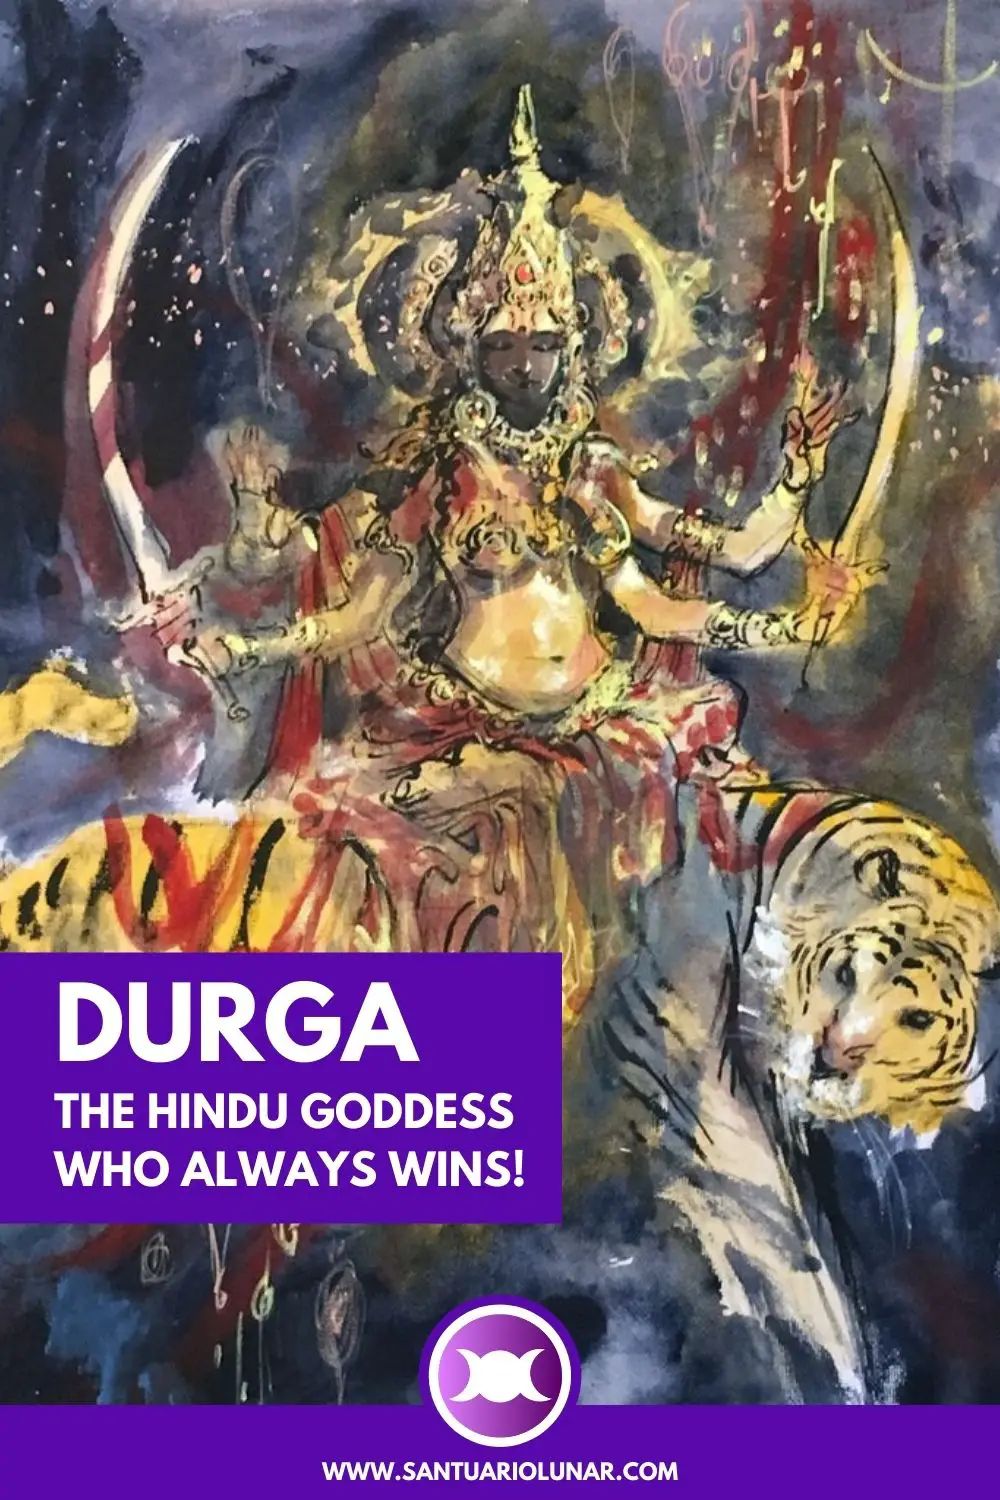 Durga Devi by abhiart for Pinterest